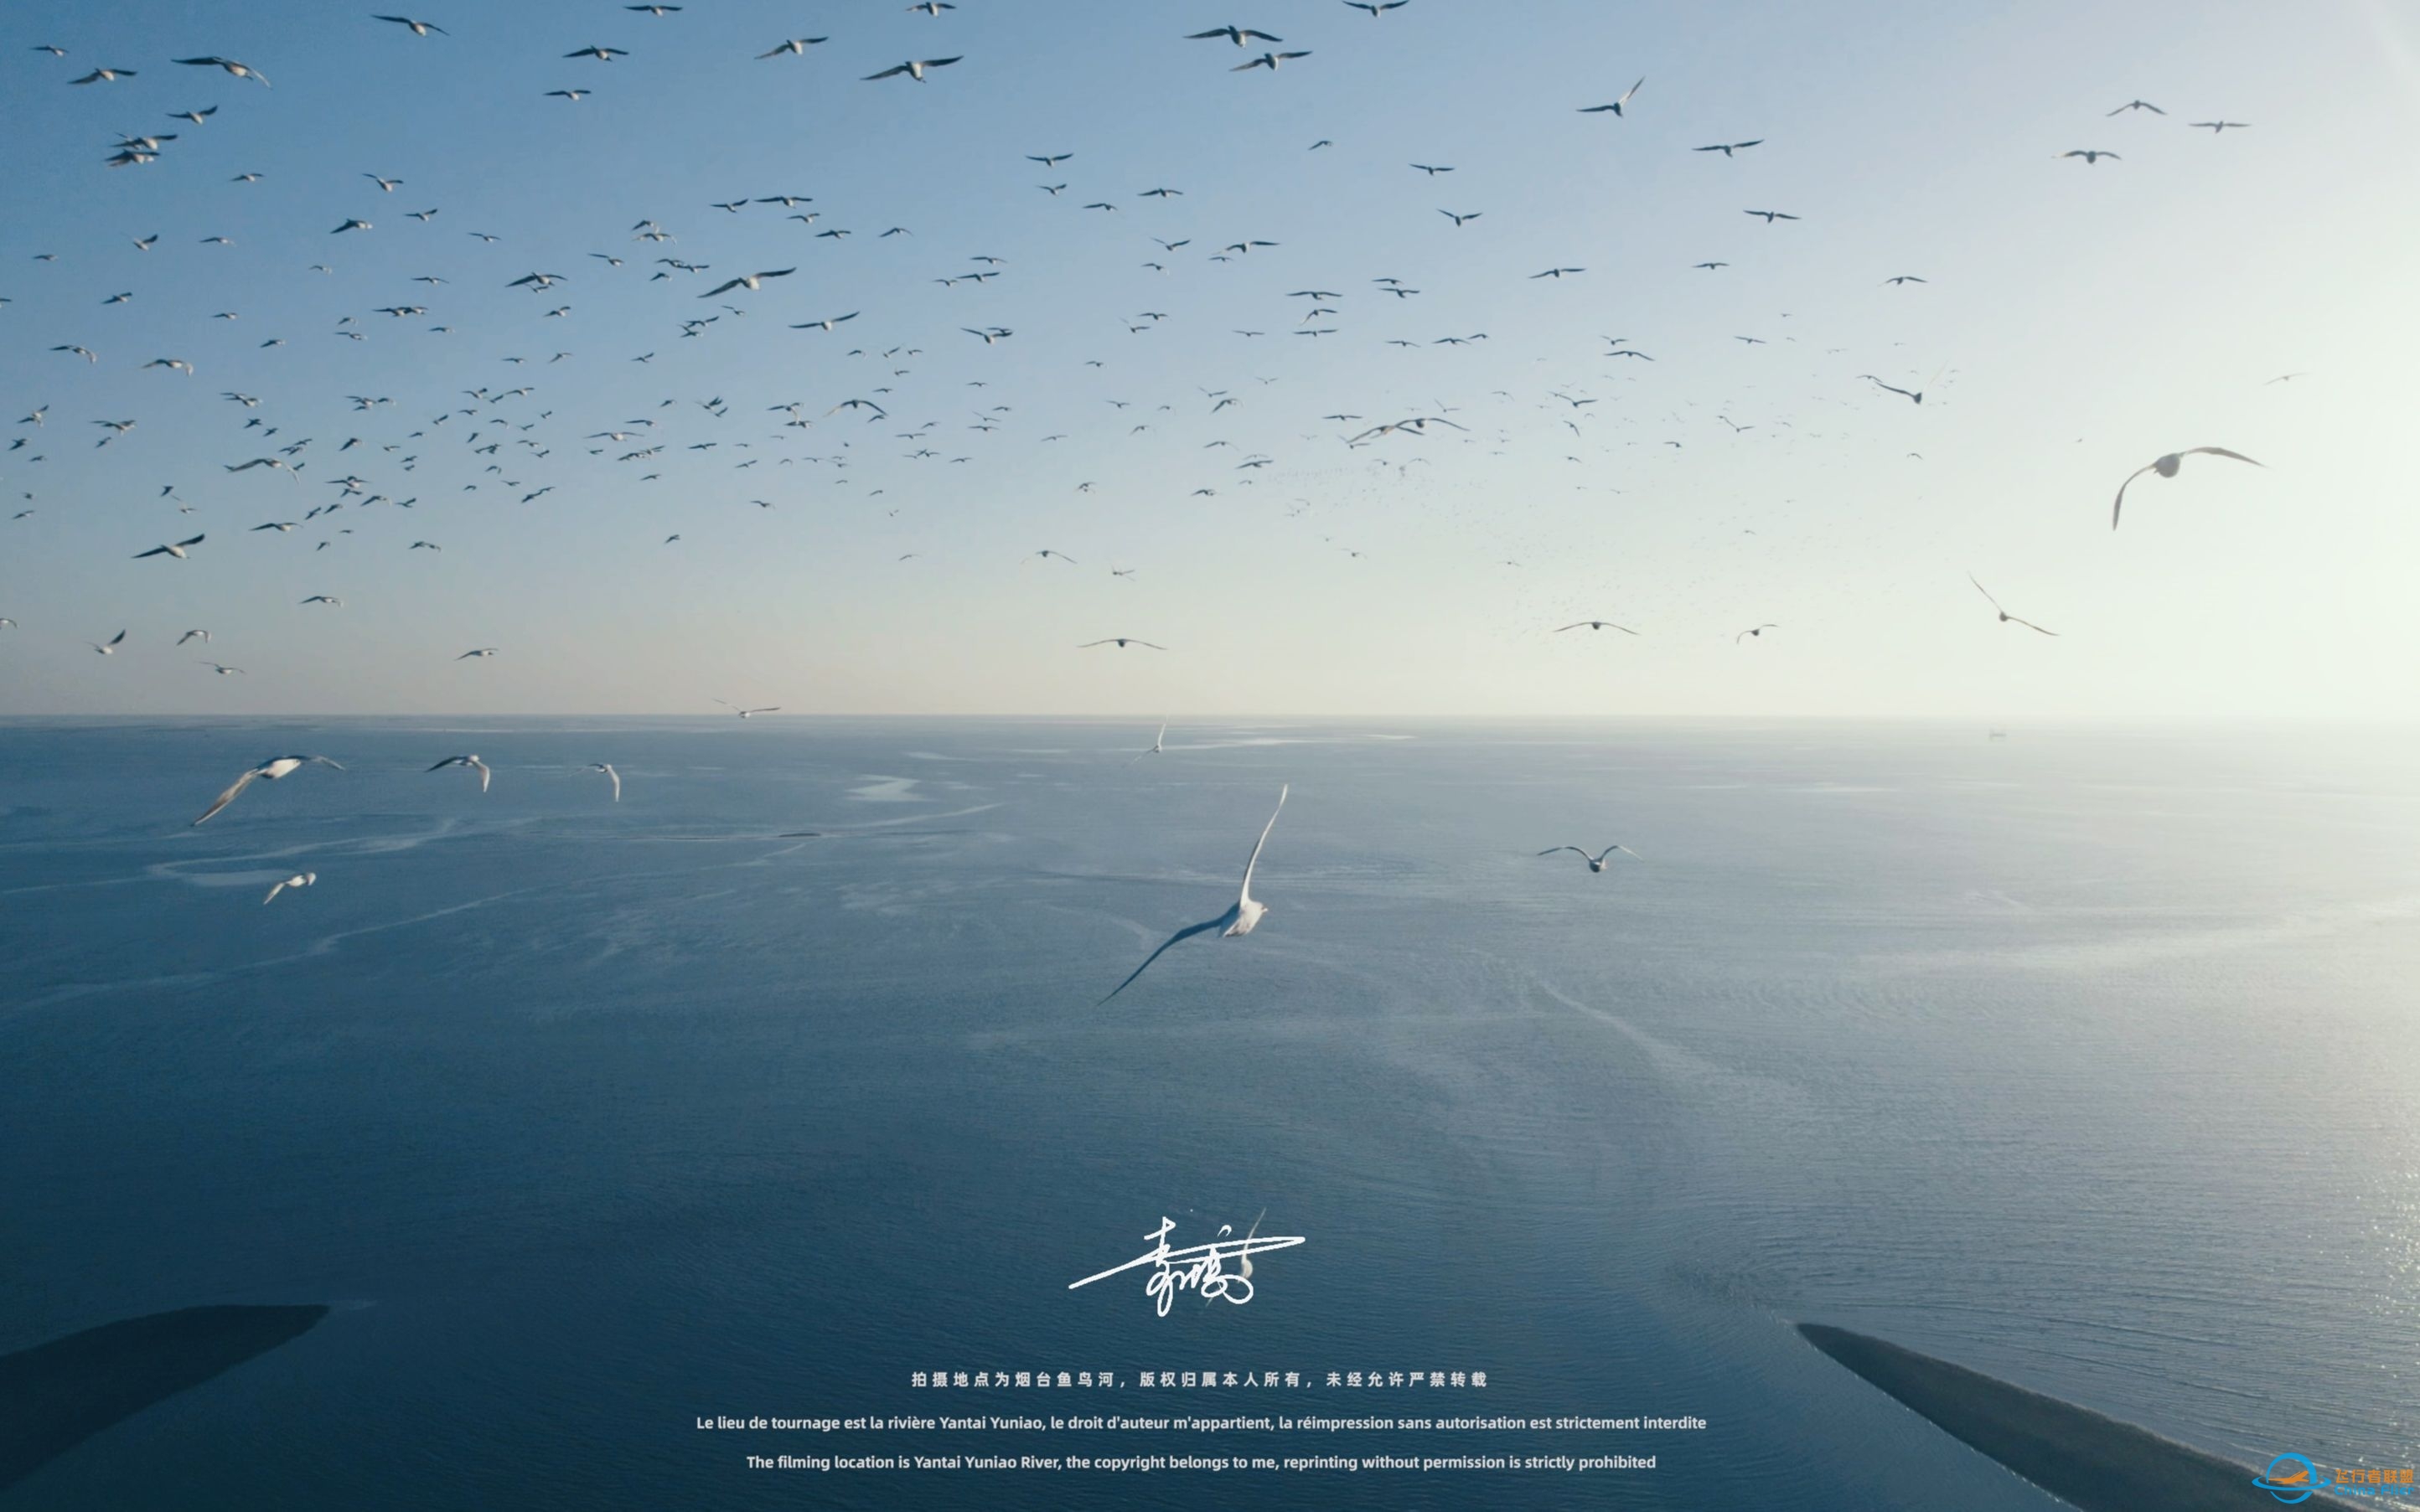 【沉浸式飞行】[DJI AIR 2S]一次跟海鸥一起的沉浸式飞行体验~-8601 